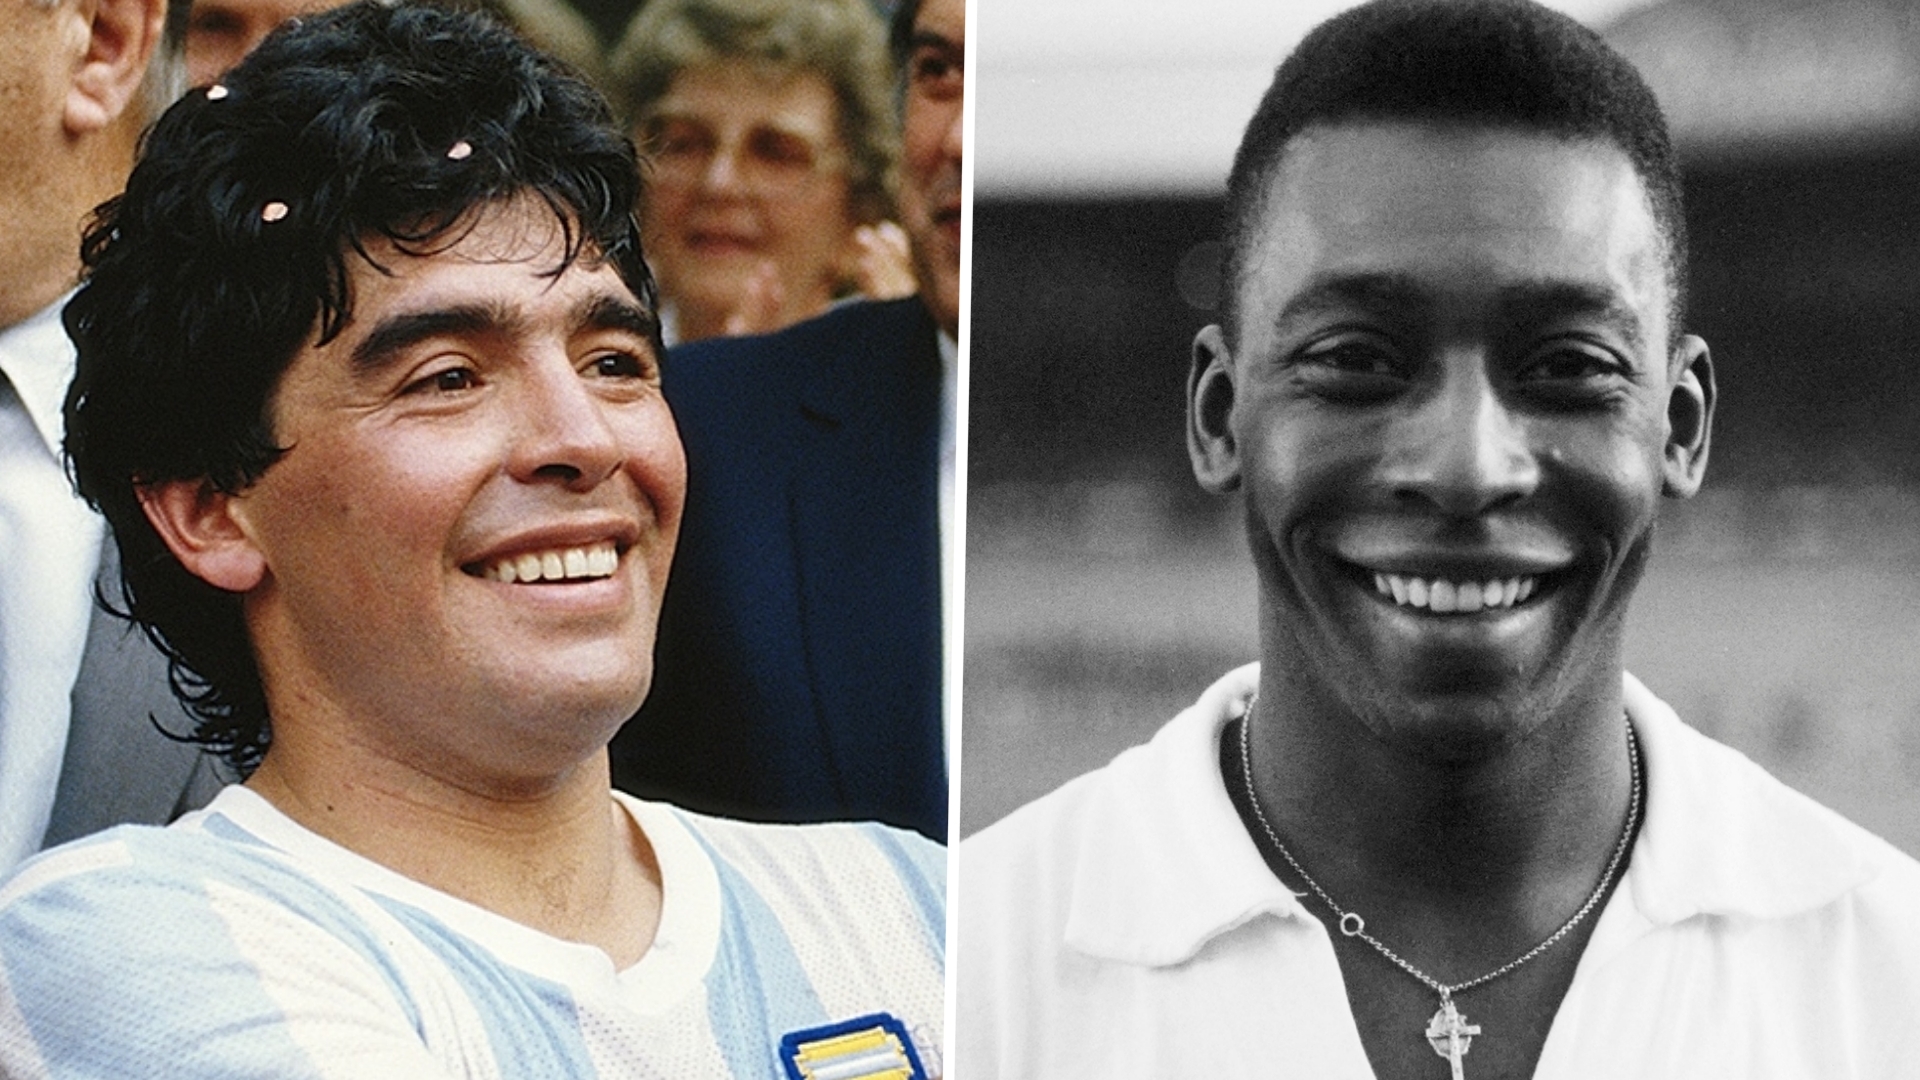 Pele Kirim Pujian Luar Biasa untuk Messi dan Mbappe, Maradona Pasti Sedang Tersenyum